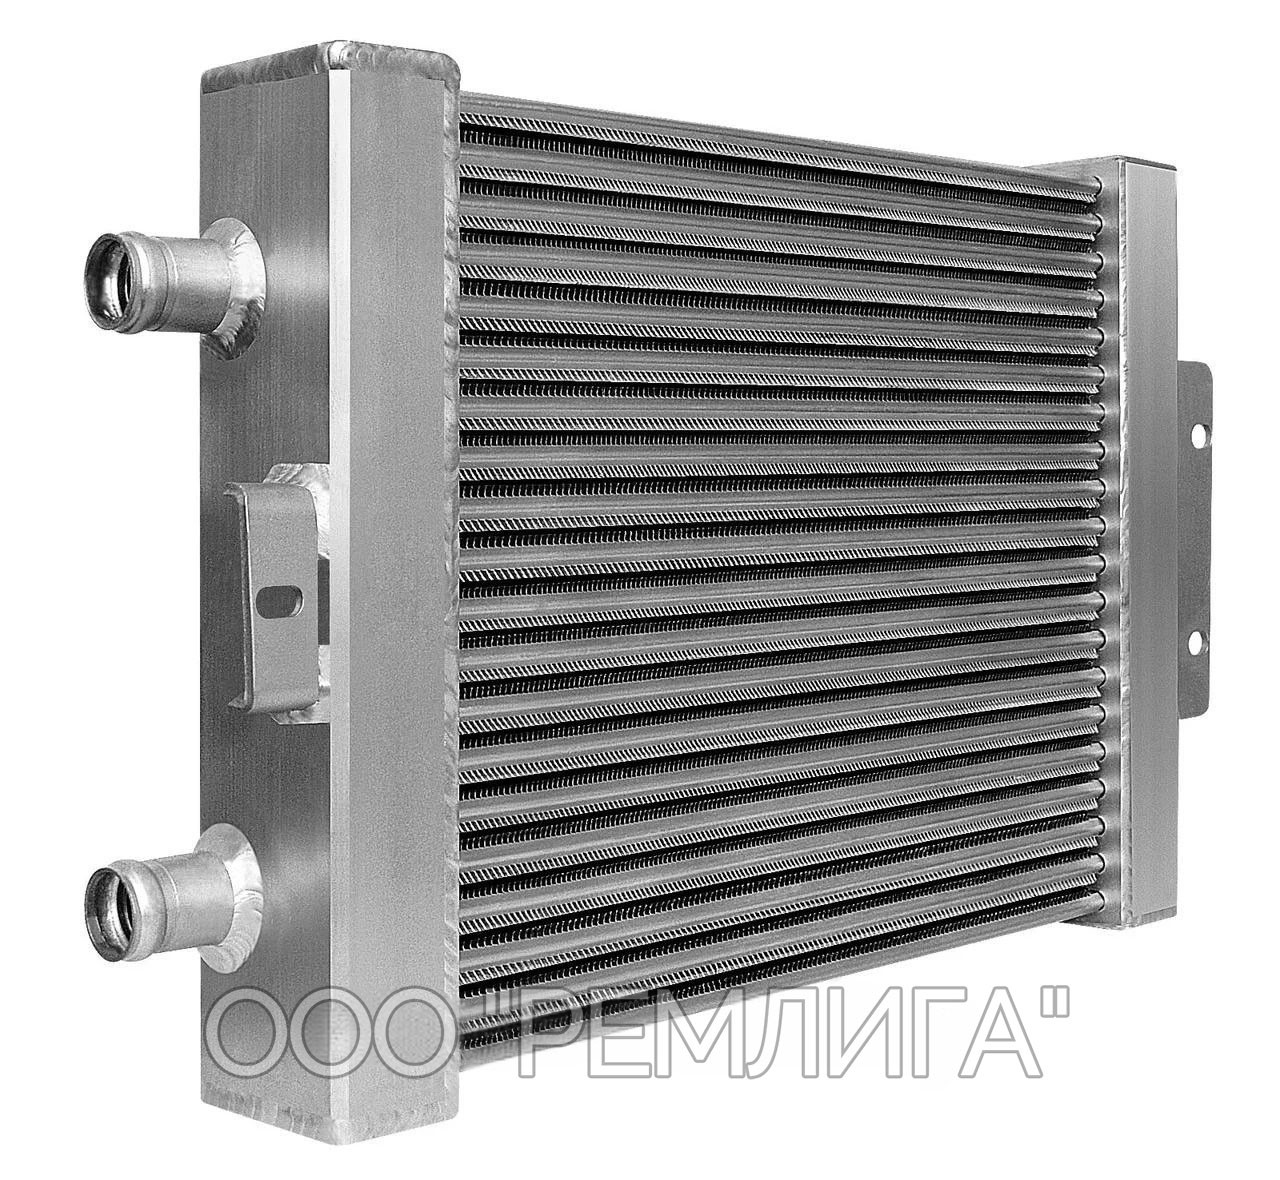 Радиатор масляный гидропривода ММЗ Д-260 (поставляется на конвеер) (М220ТУ-68.52.16)